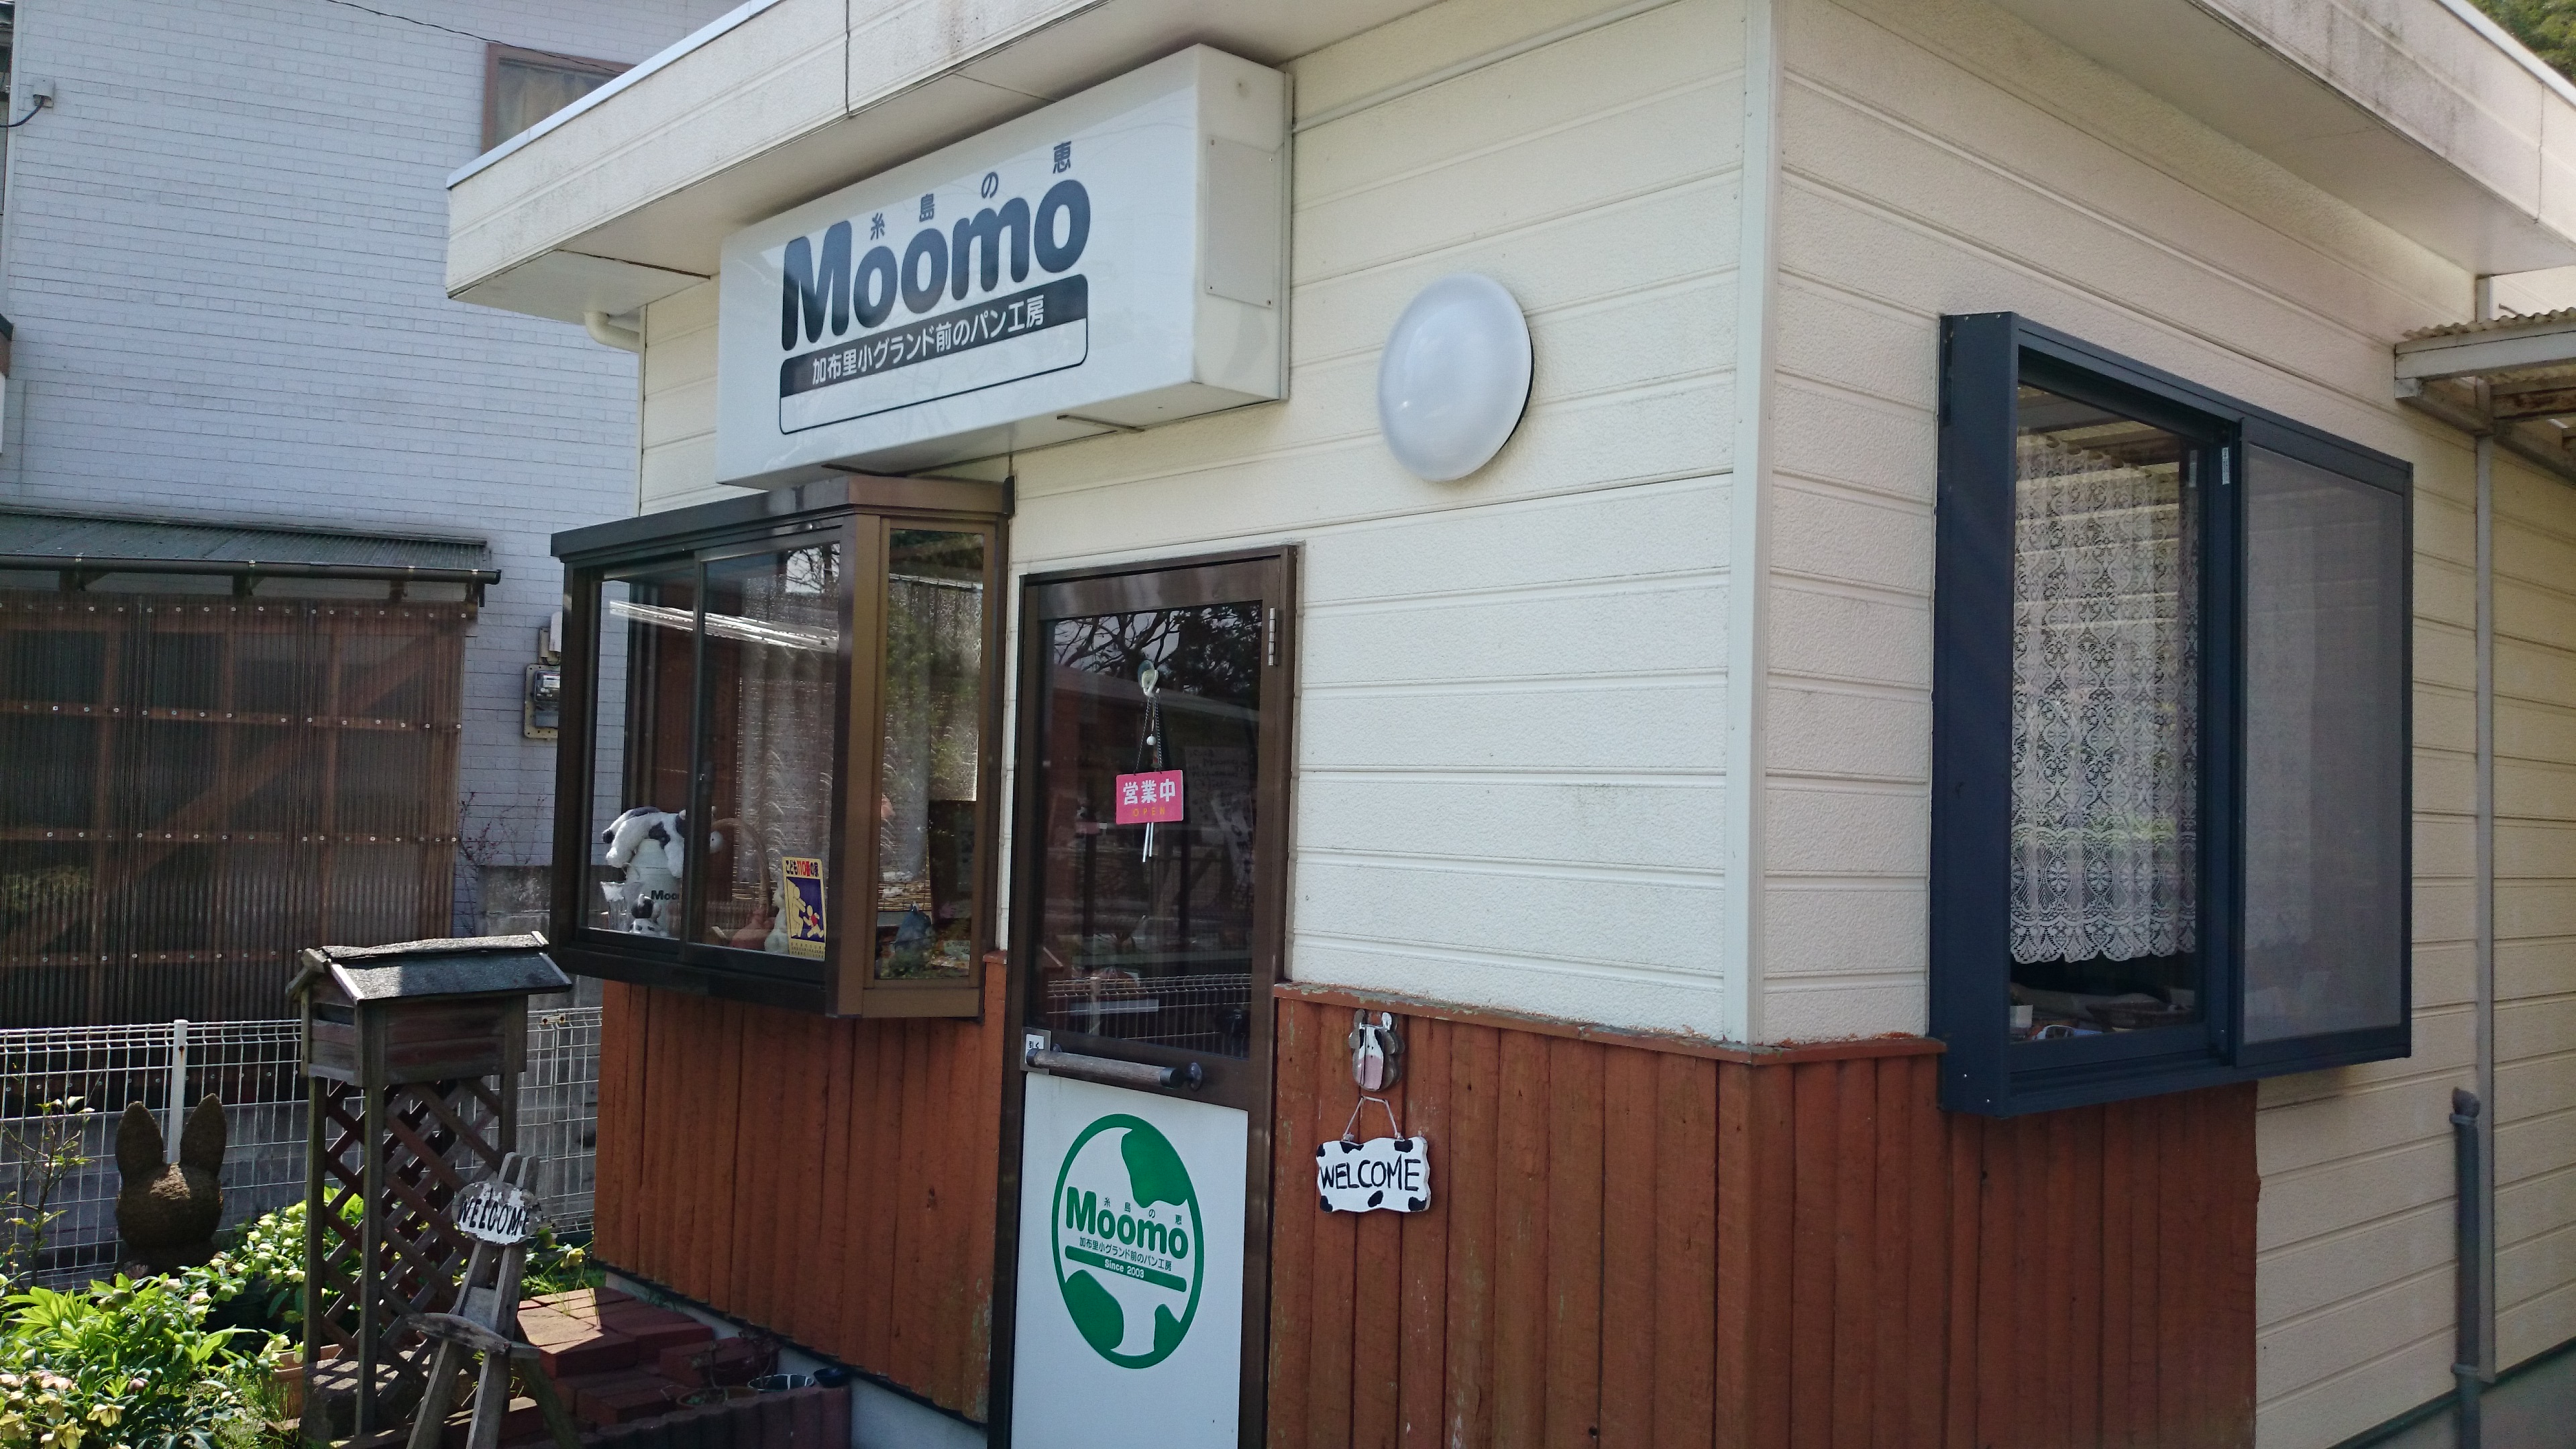 良心的な価格と温かい接客、糸島市のパン工房「Moomo(モーモ)」。